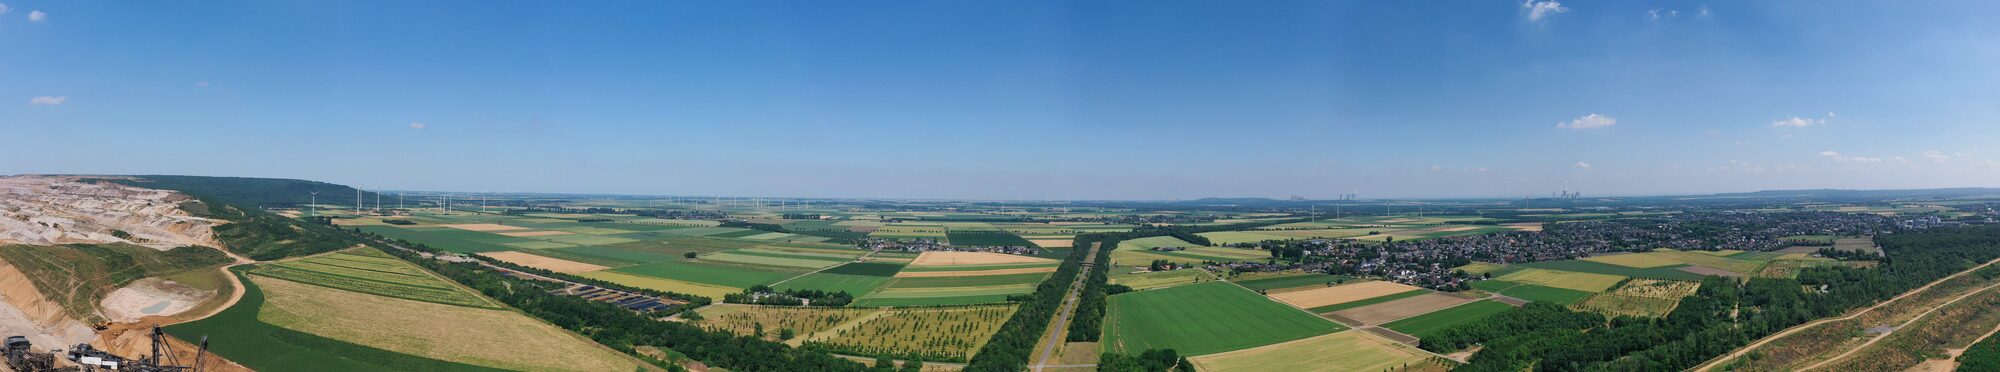 Tagebau Hambach Panorama Landwirtschaft